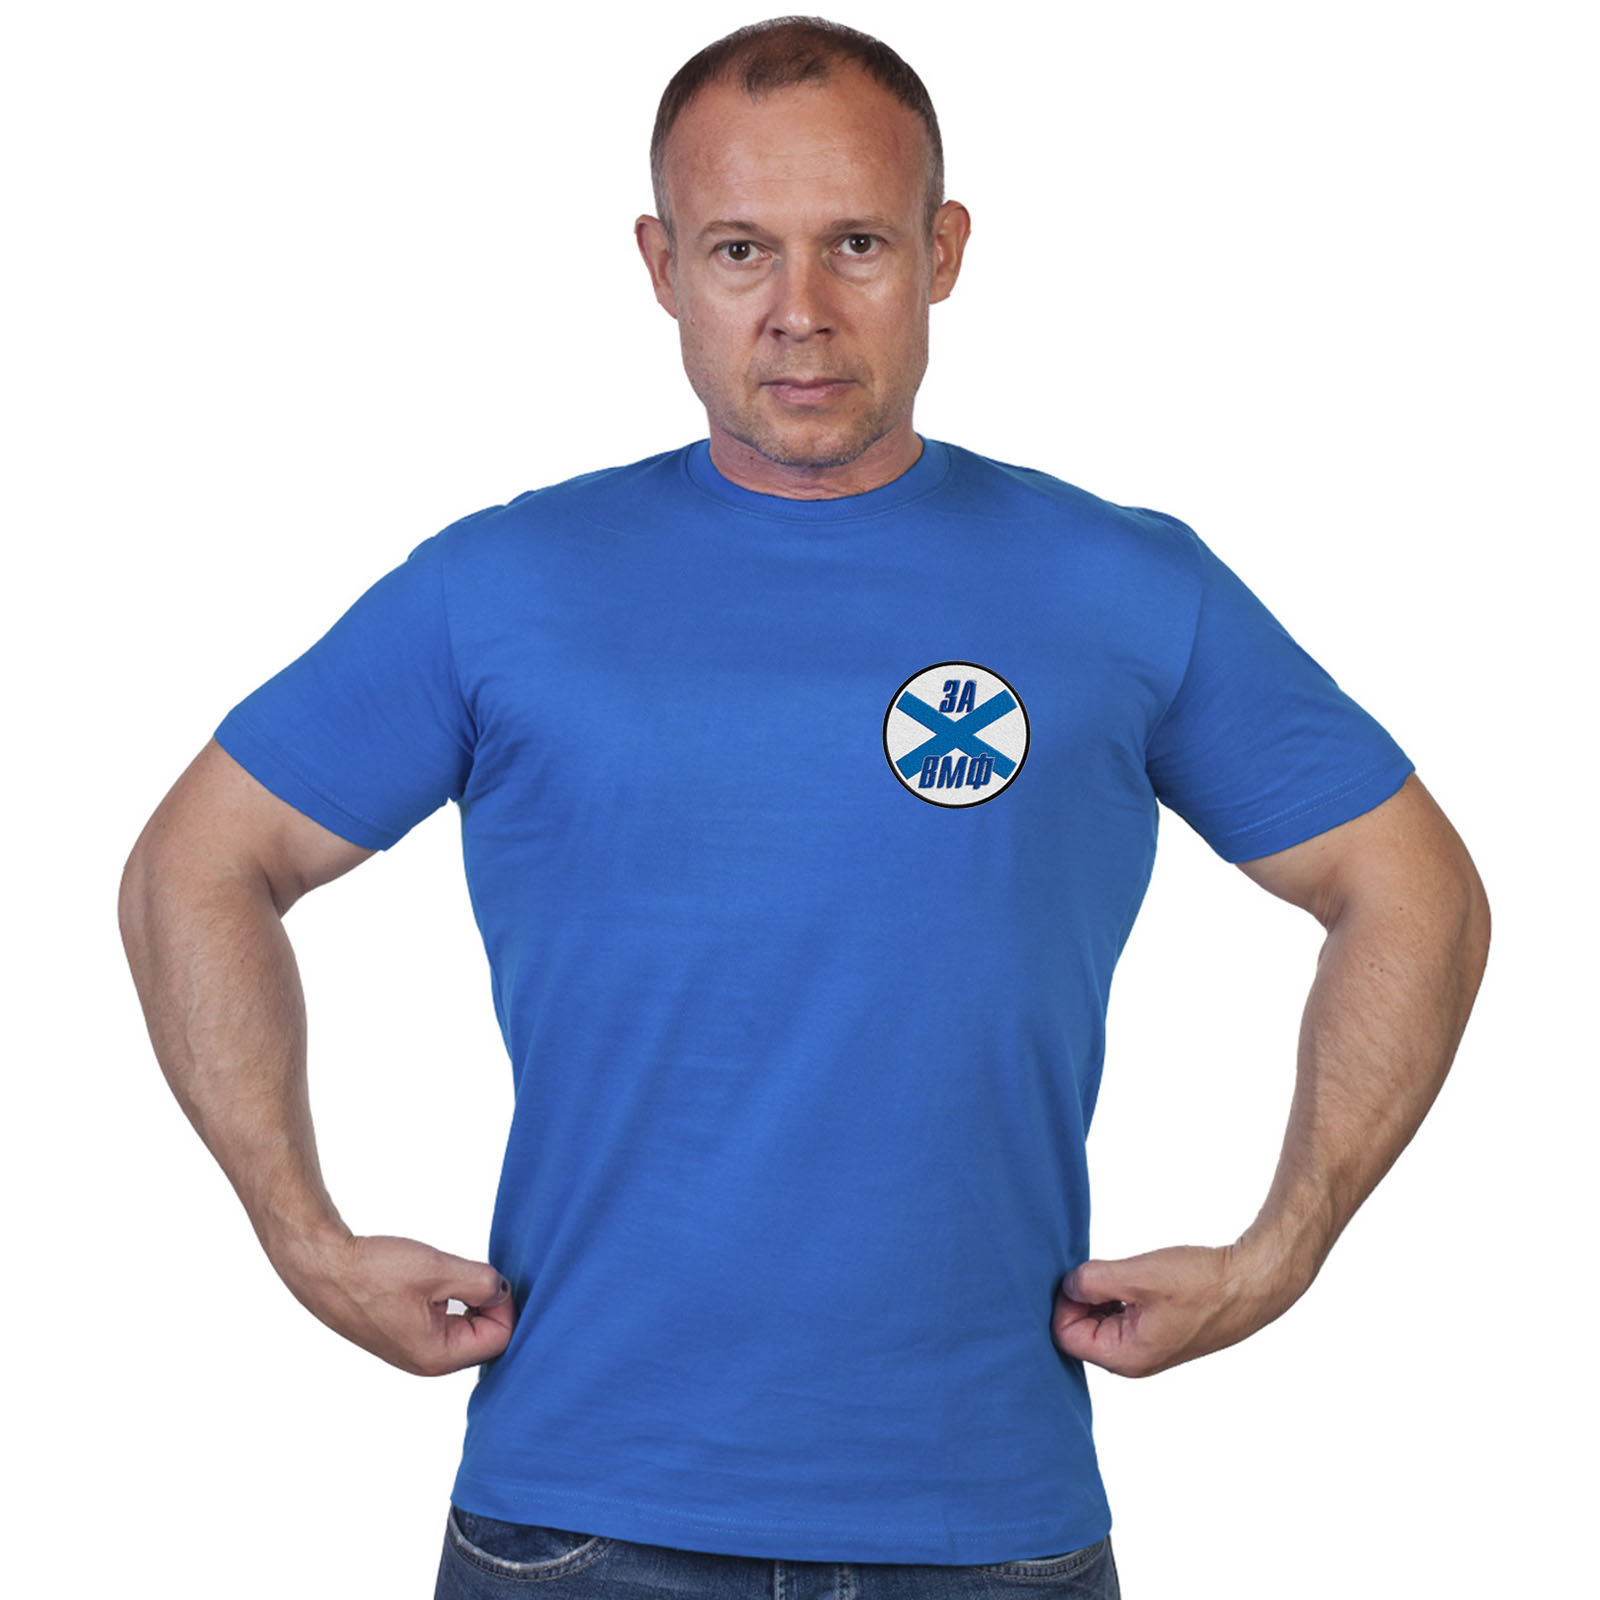 Васильковая футболка с нашивкой "За ВМФ"